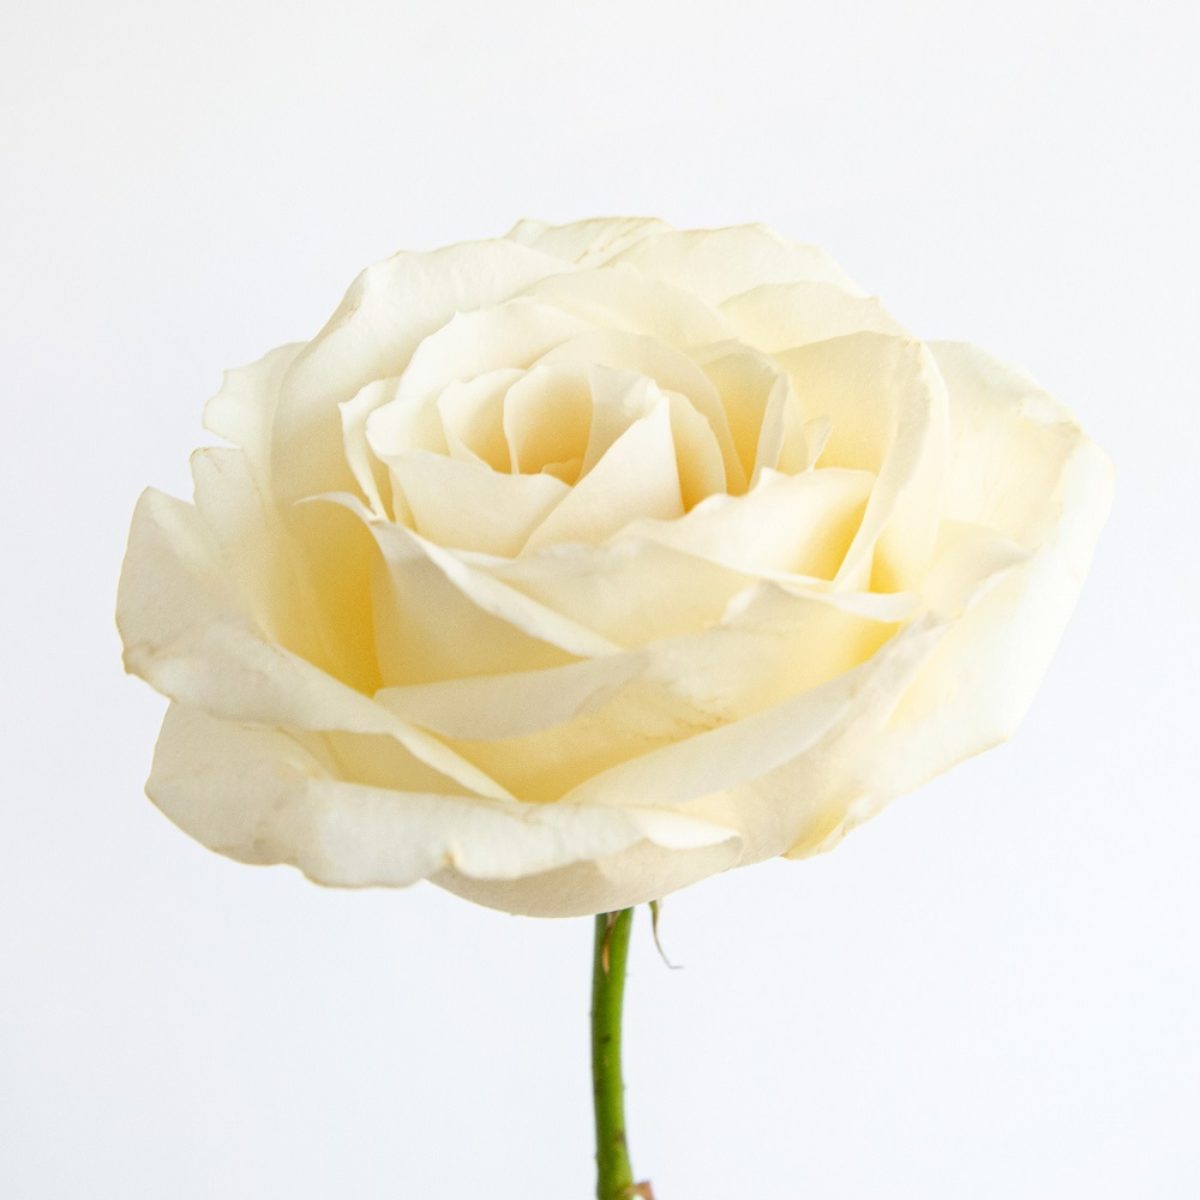 Historia y significado de las rosas blancas | Colvin Blog